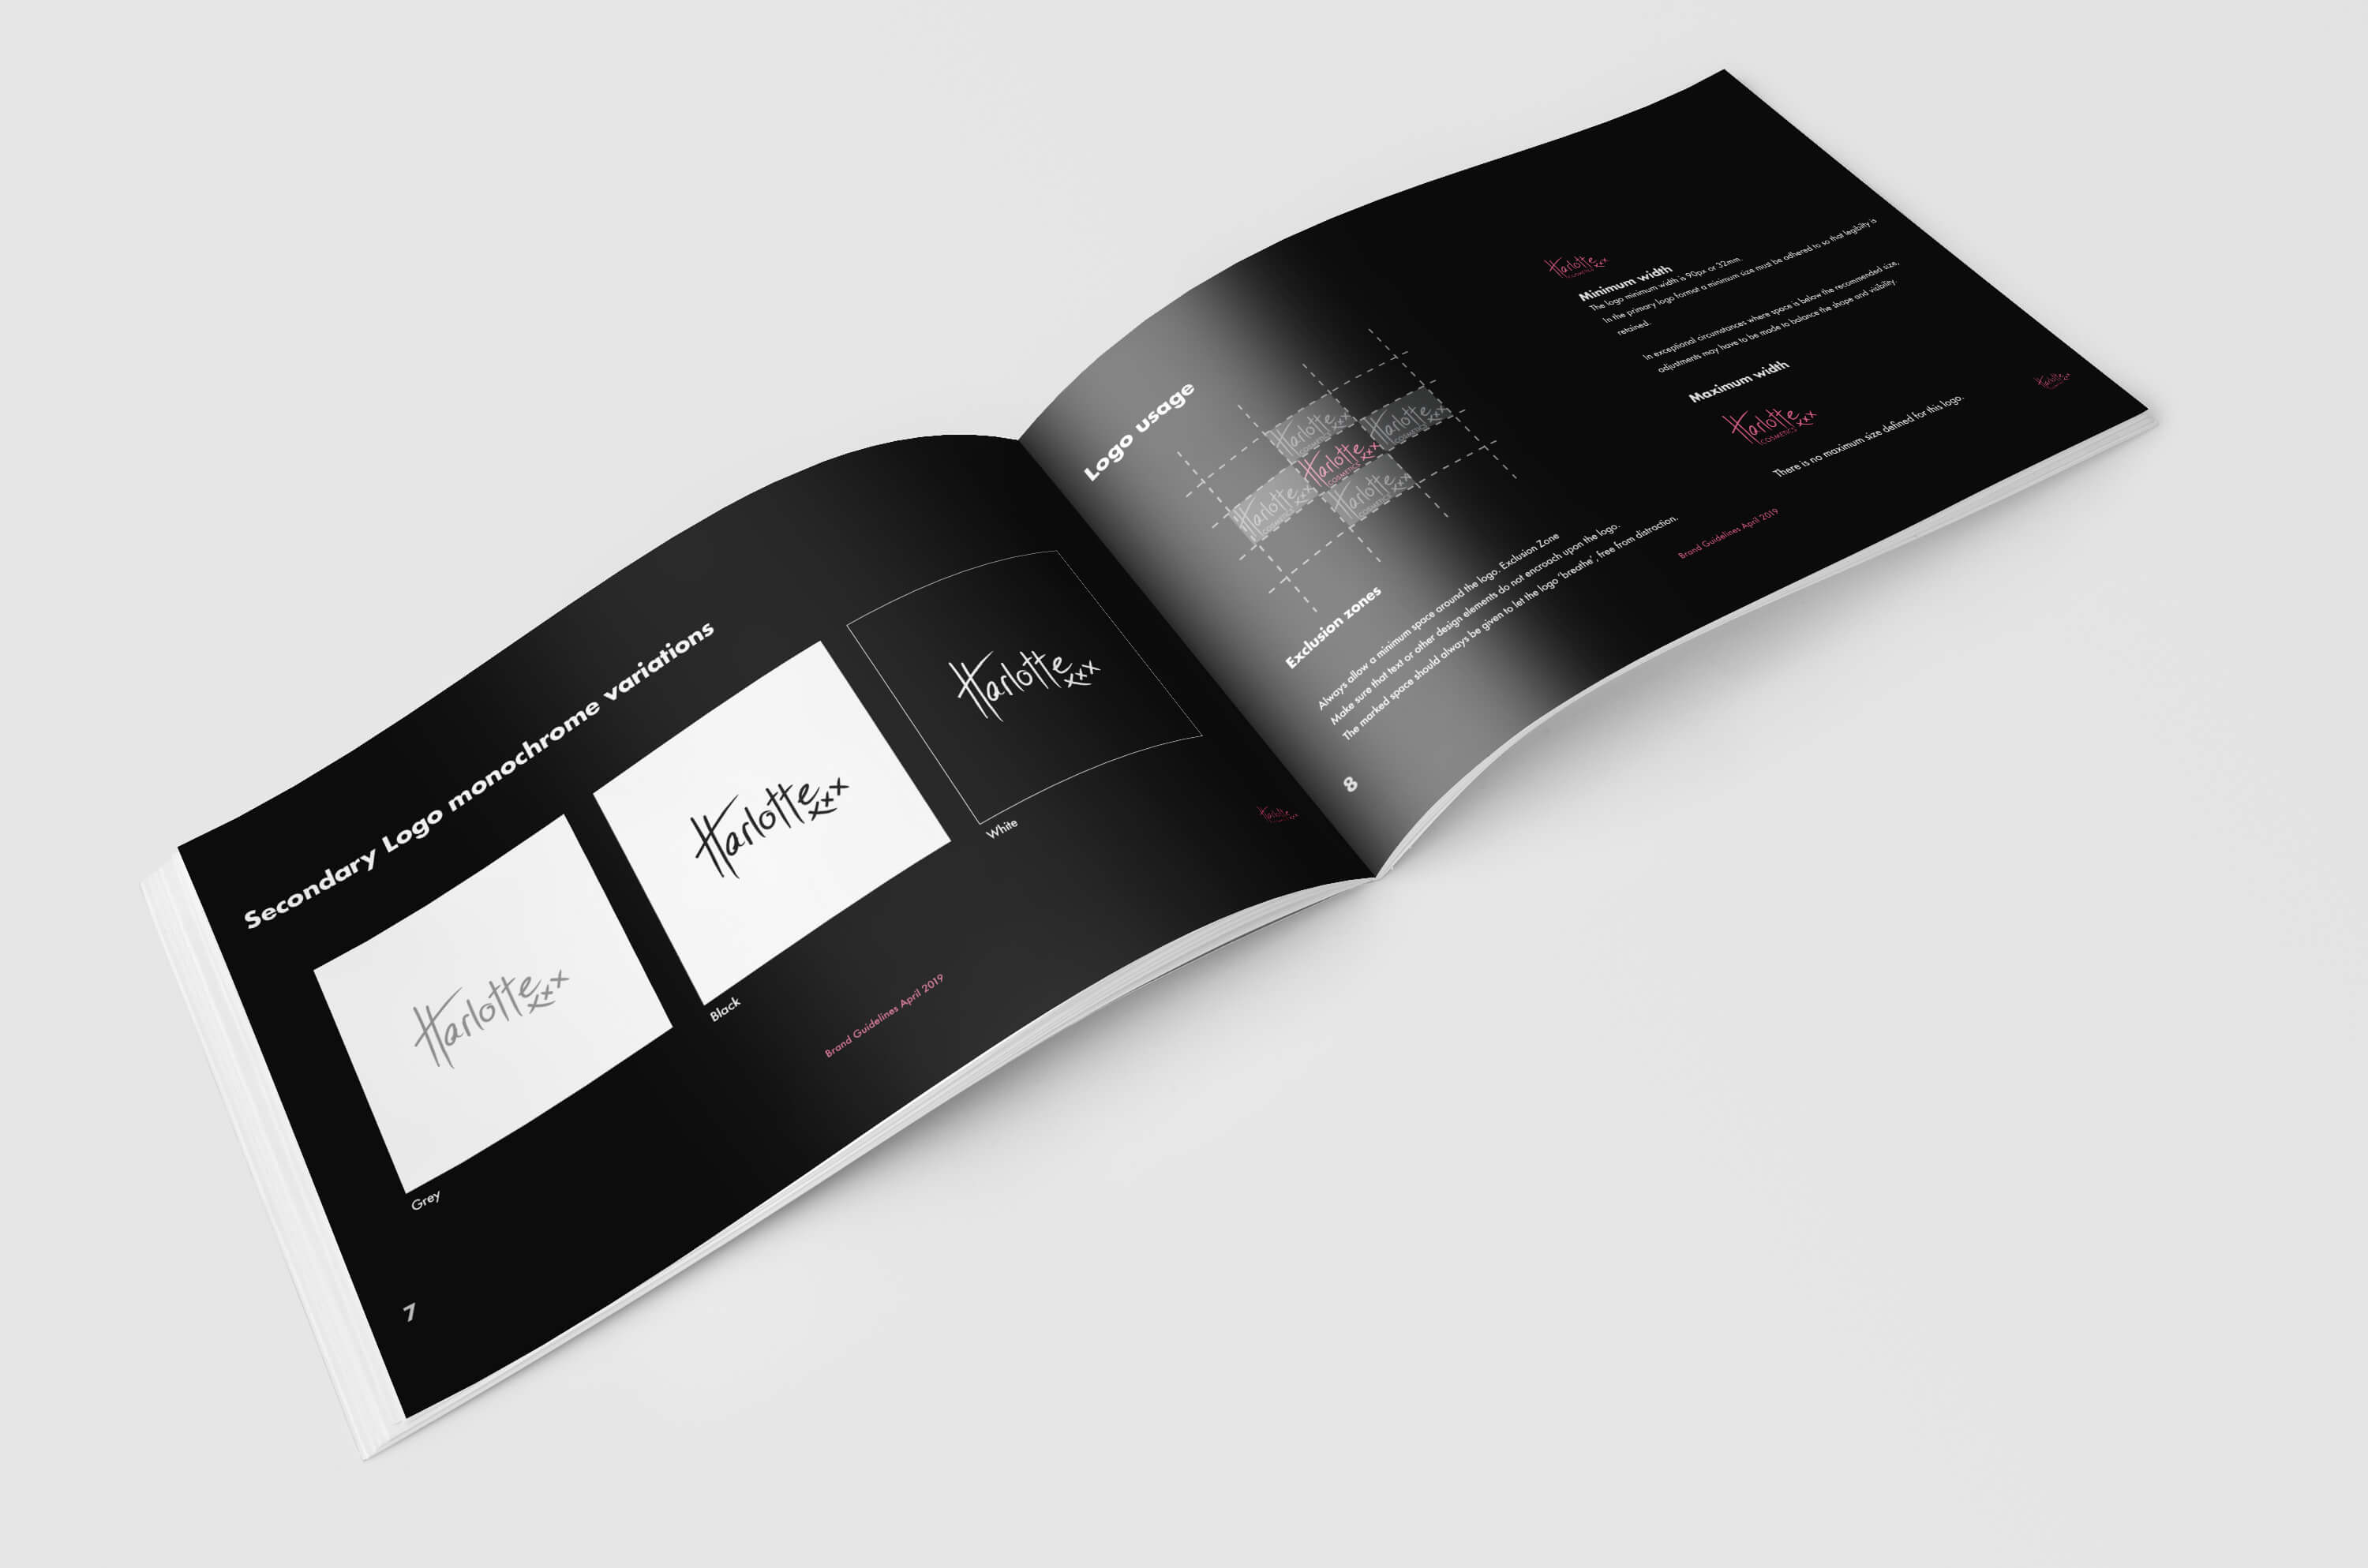 branding-guidelines-identity-logo-design-freelance-graphic-designer-bexley-kogarah-sydney-metrodesign-6